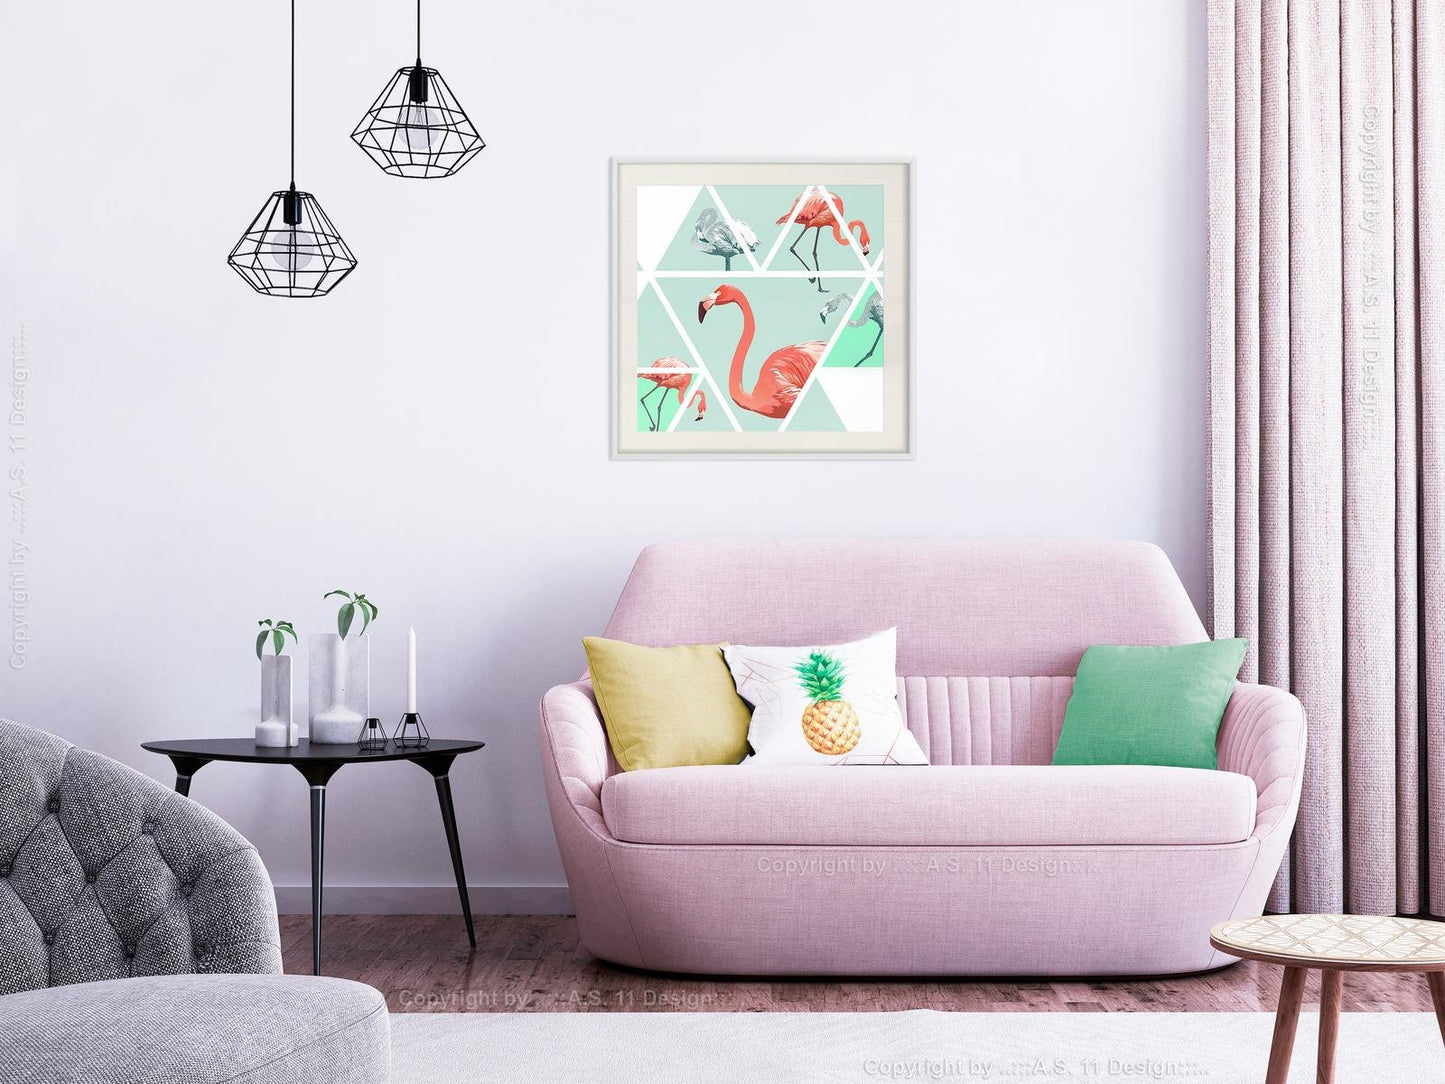 Tropisches Mosaik mit Flamingos (Quadrat)